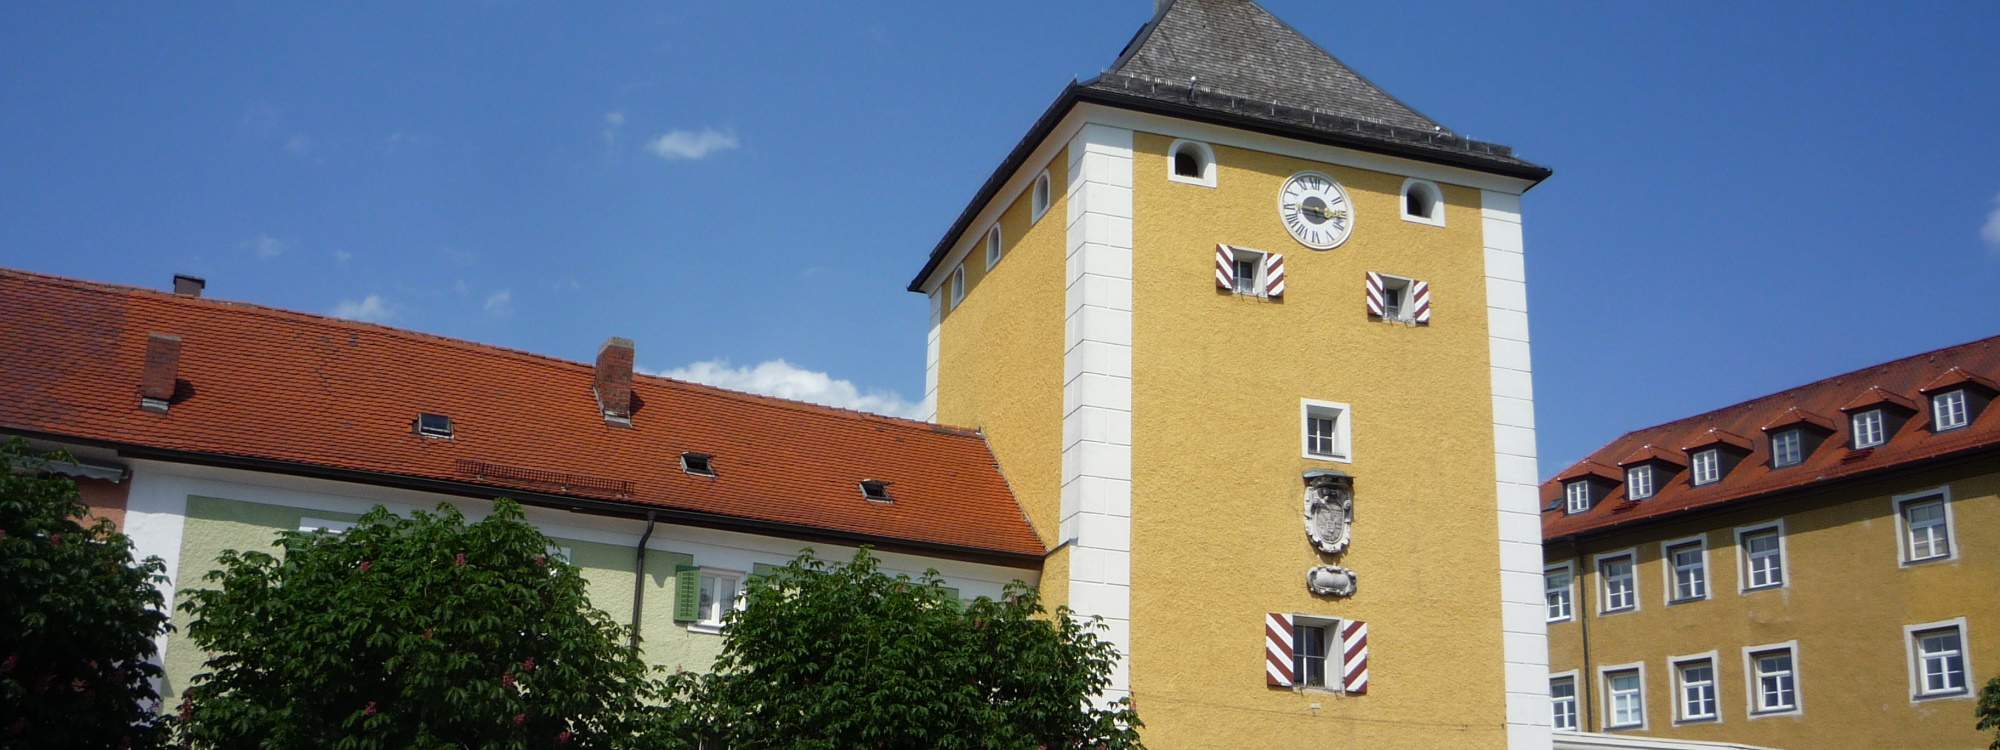 Nahaufnahme des Oberen Stadttores mit den Salzburgischen Schlagläden und dem Wappen